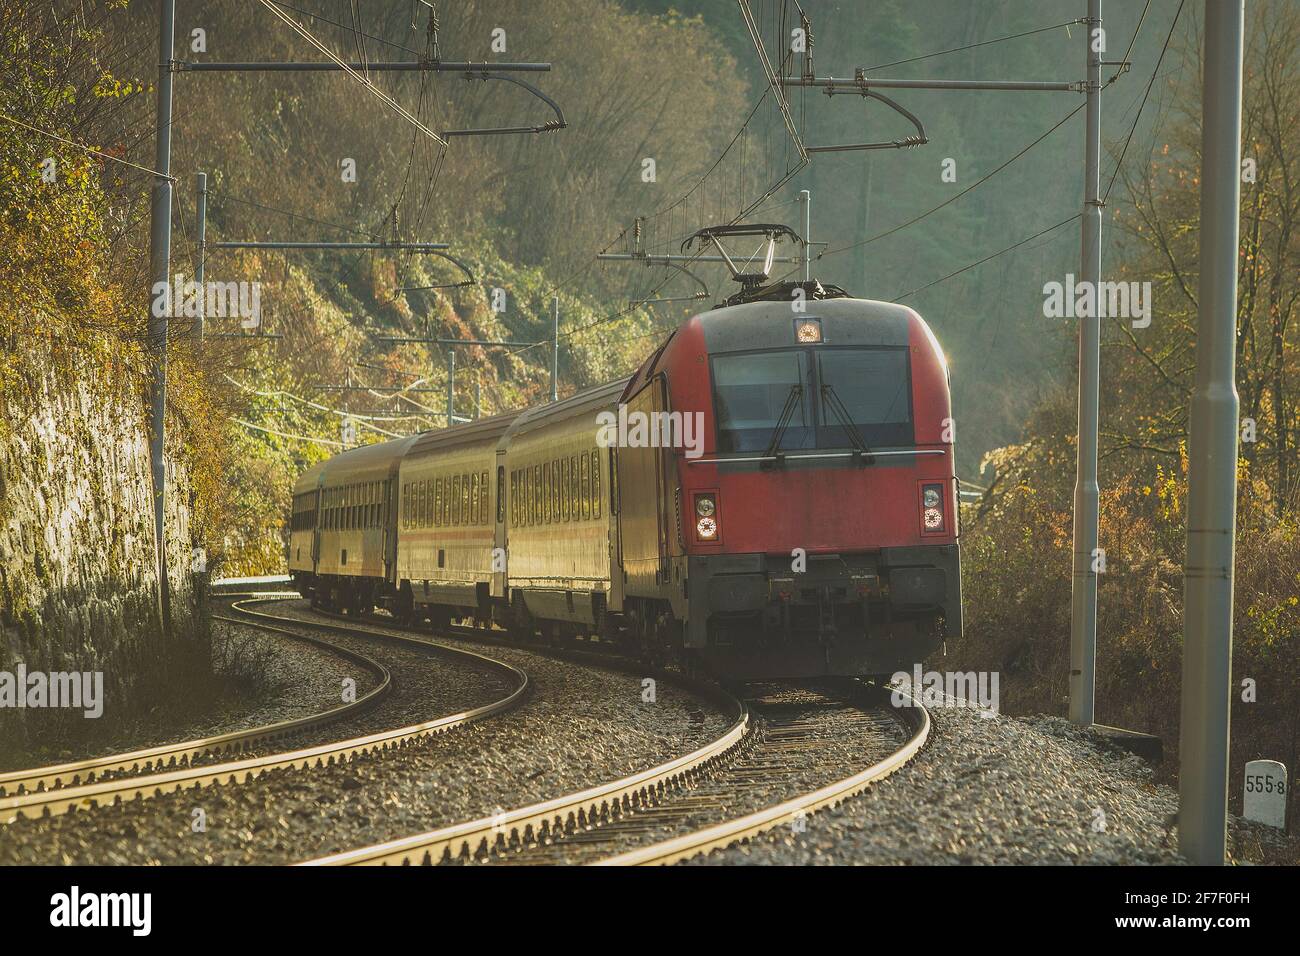 Personenzug auf einer Kurve mit einer modernen roten Lokomotive bei sonnigem Herbstwetter. Romantische Zugfahrt im frühen sonnigen Winter. Stockfoto